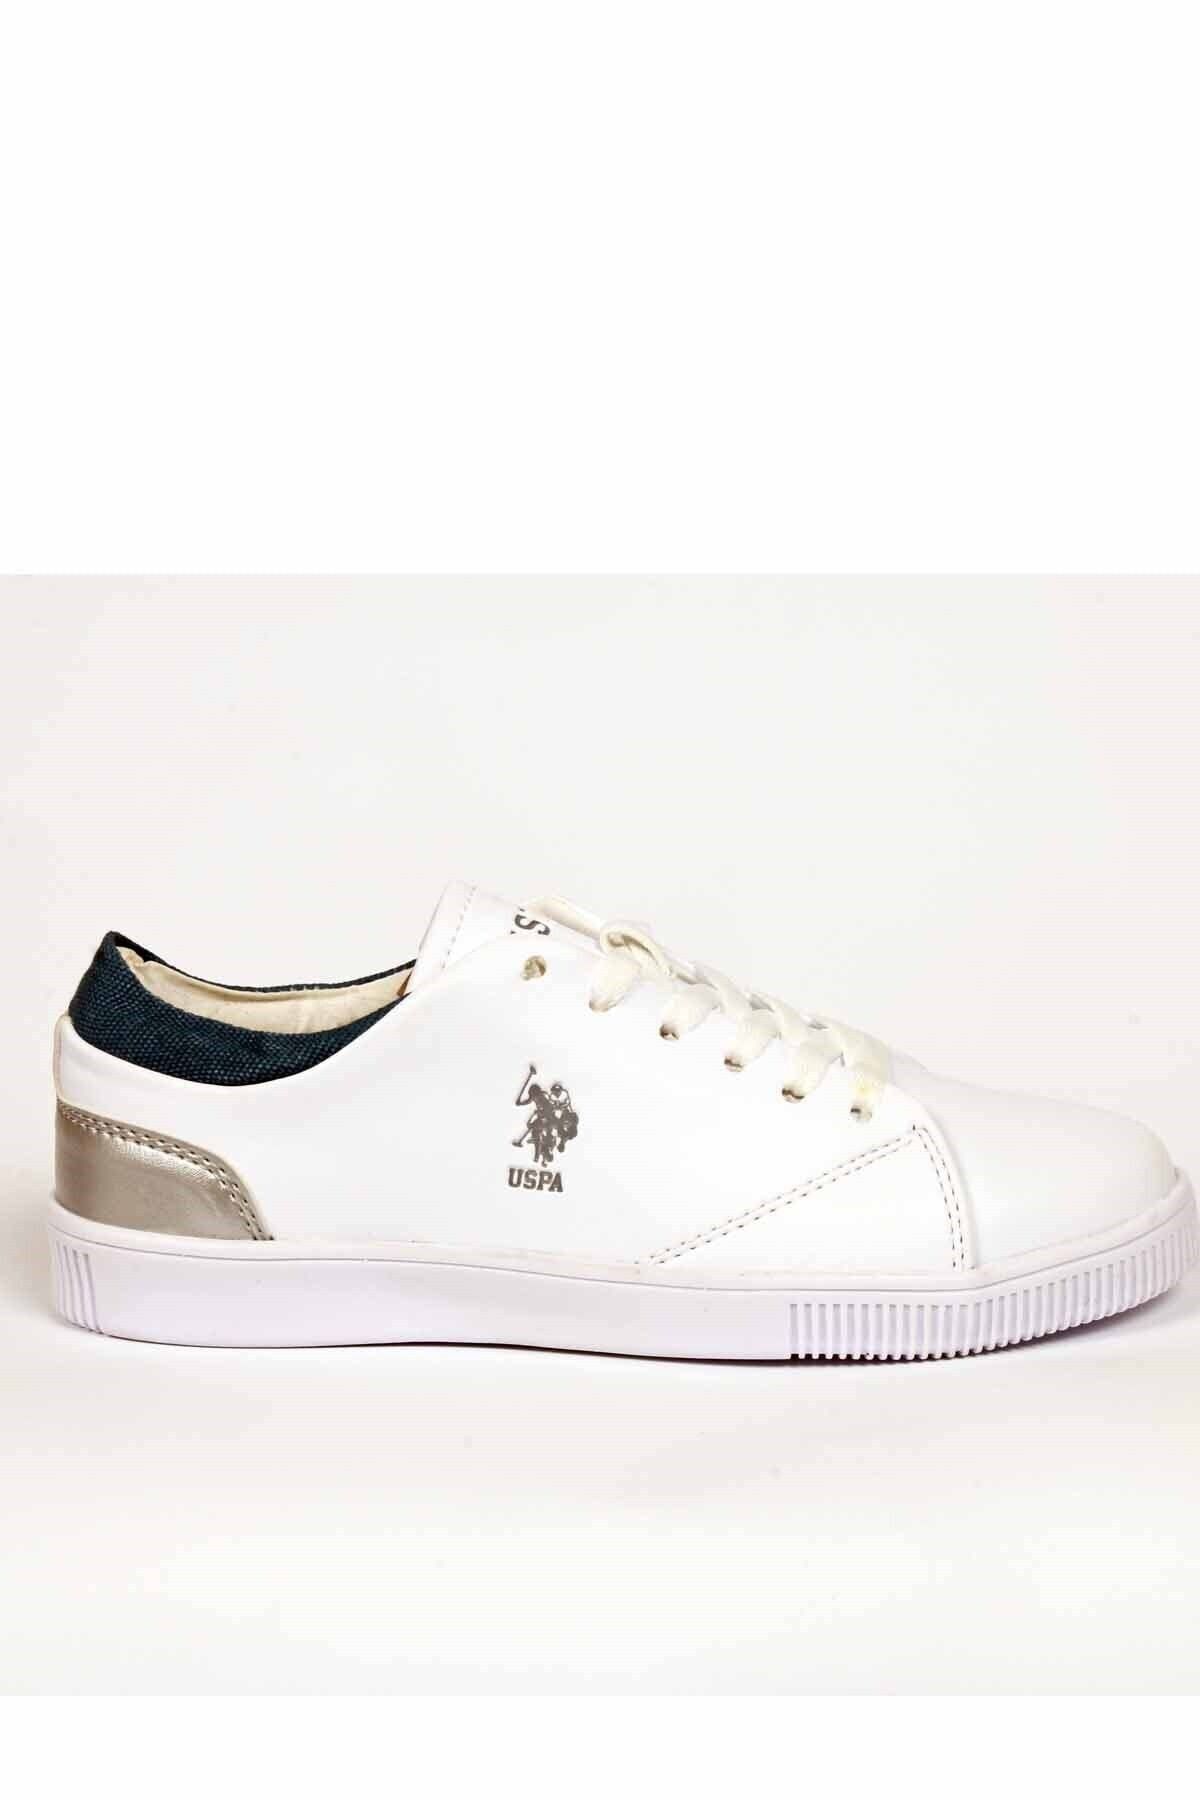 U.S. Polo Assn. REST Beyaz Kadın Basic Casual Ayakkabı 100504859